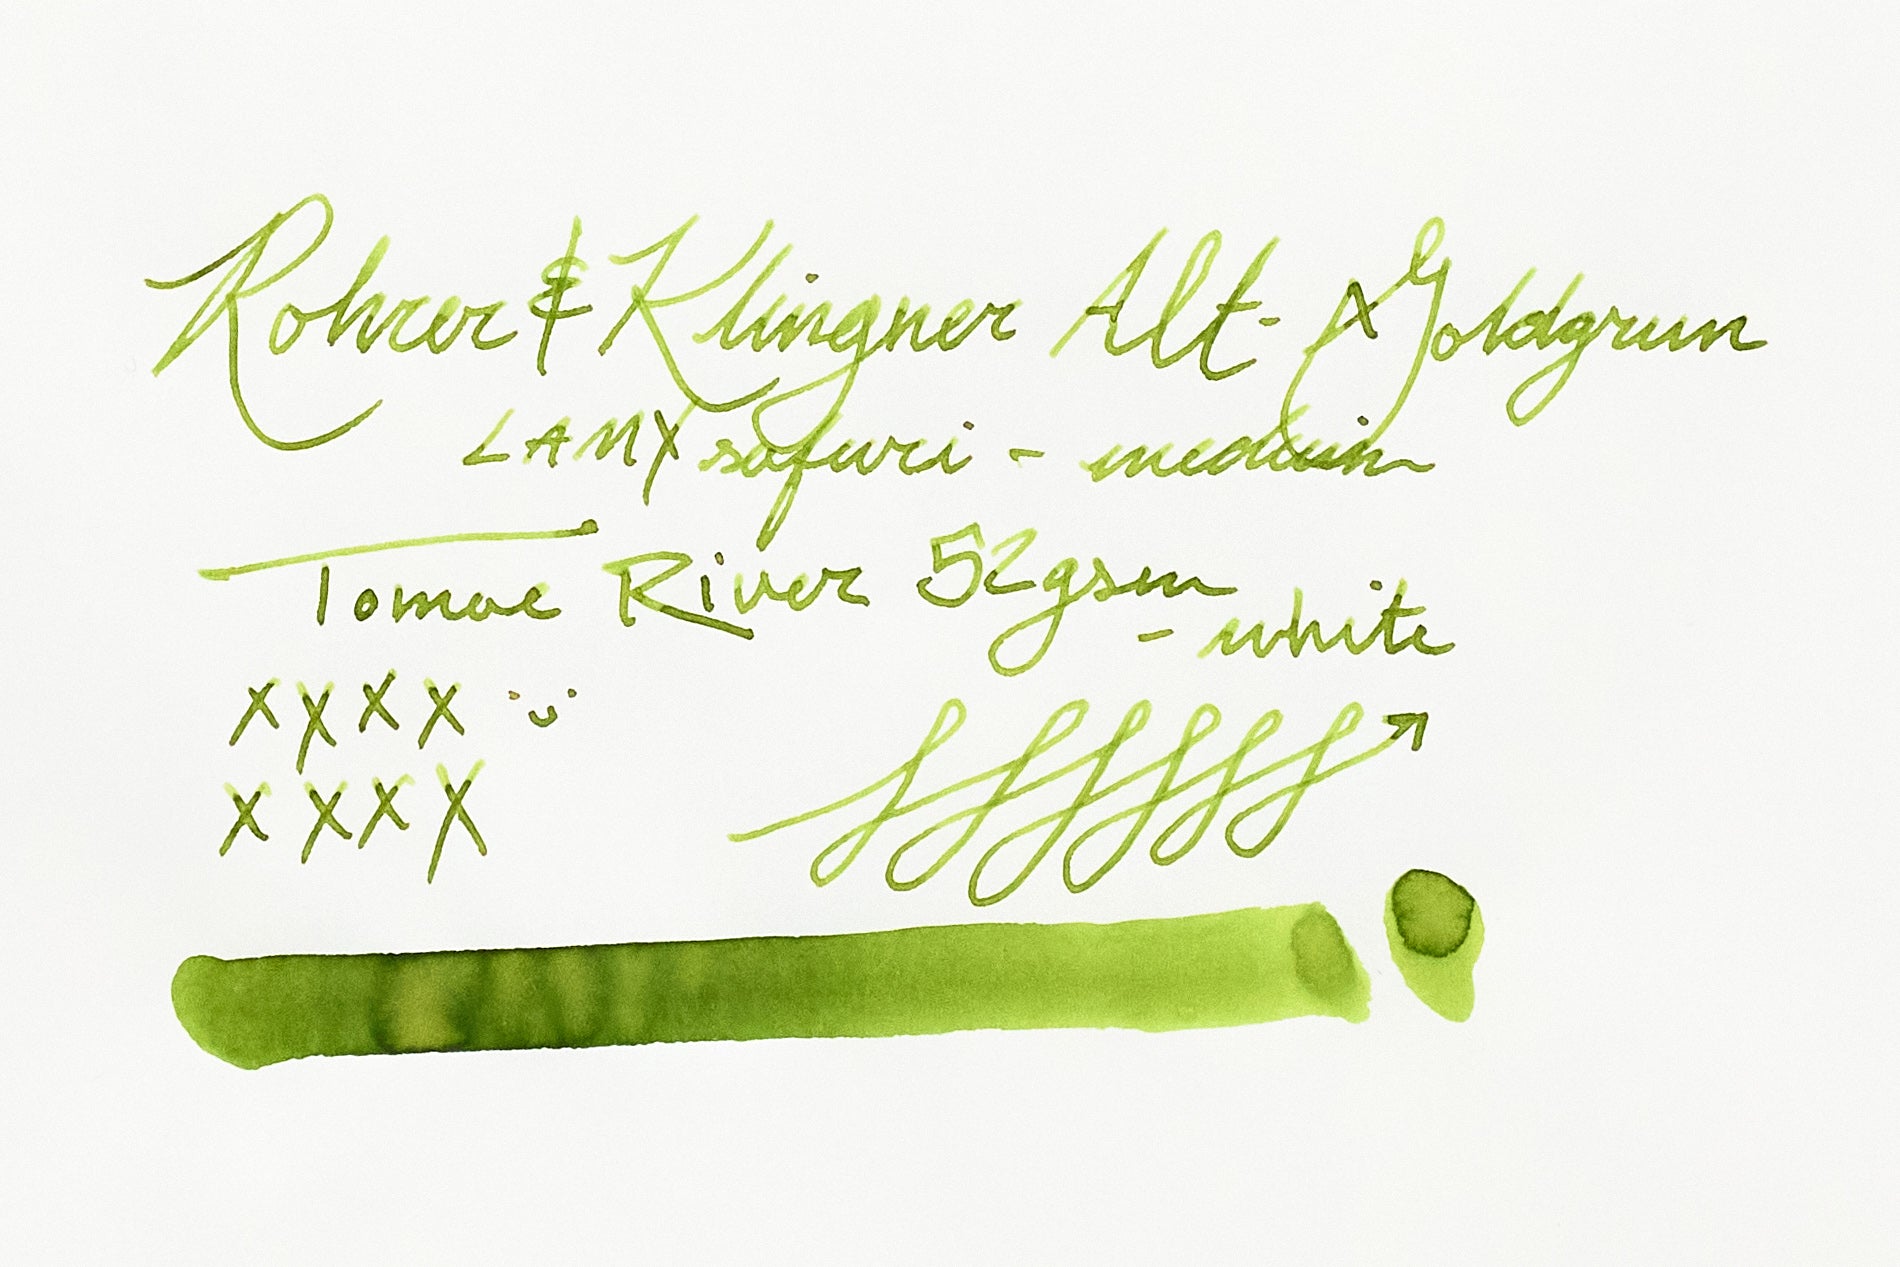 Rohrer & Klingner Alt-Goldgrun - Ink Sample